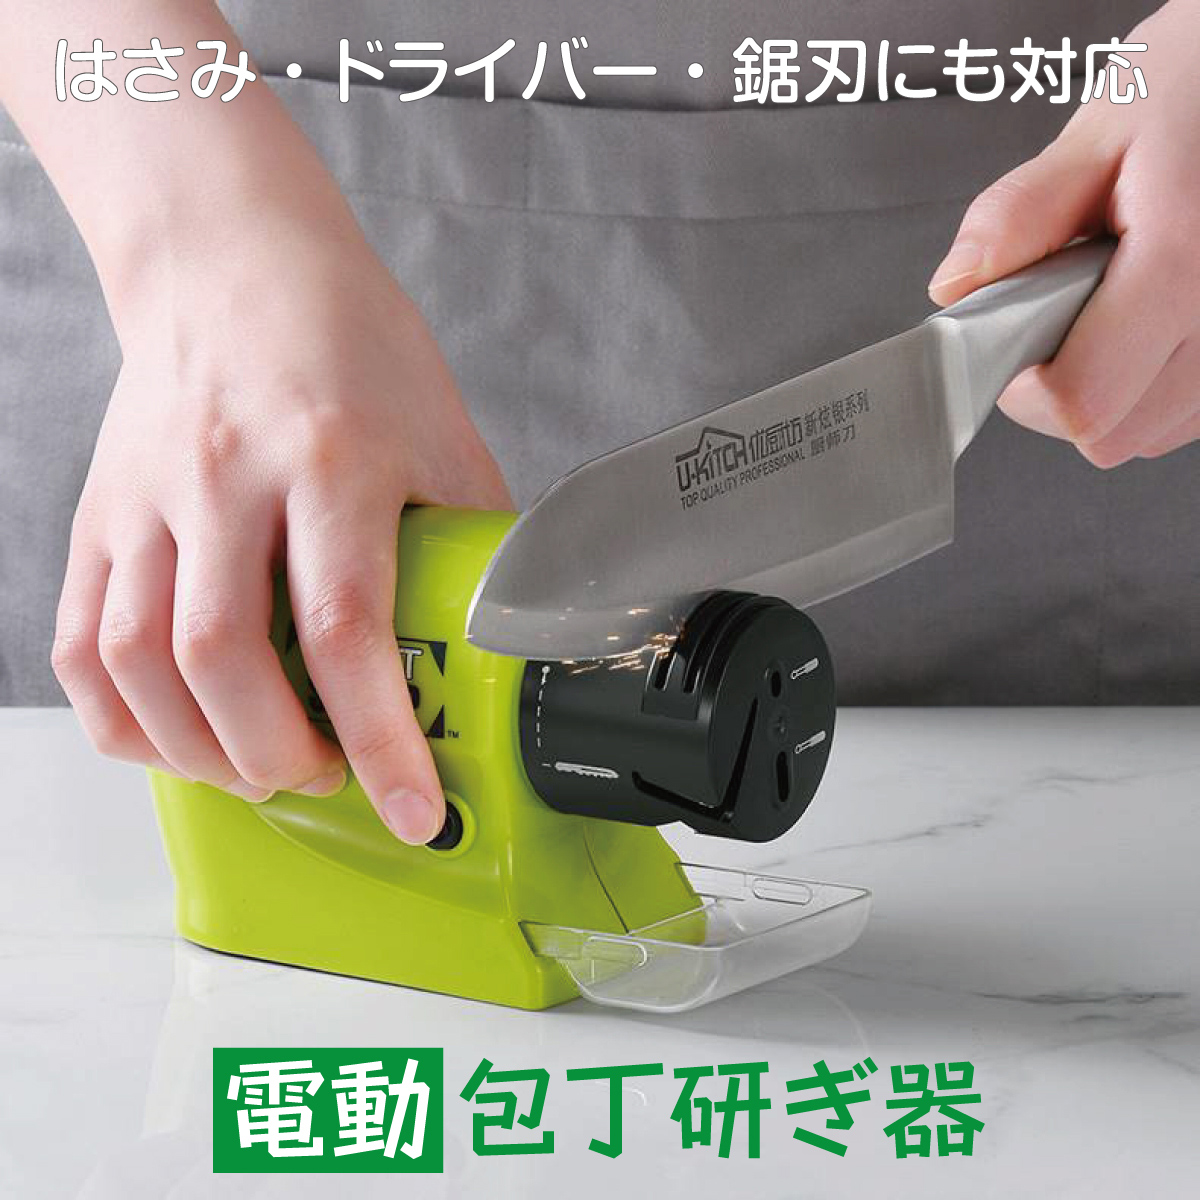 貝印 電動式包丁研ぎ器 kai House ザ シャープナー ブラック AP5301